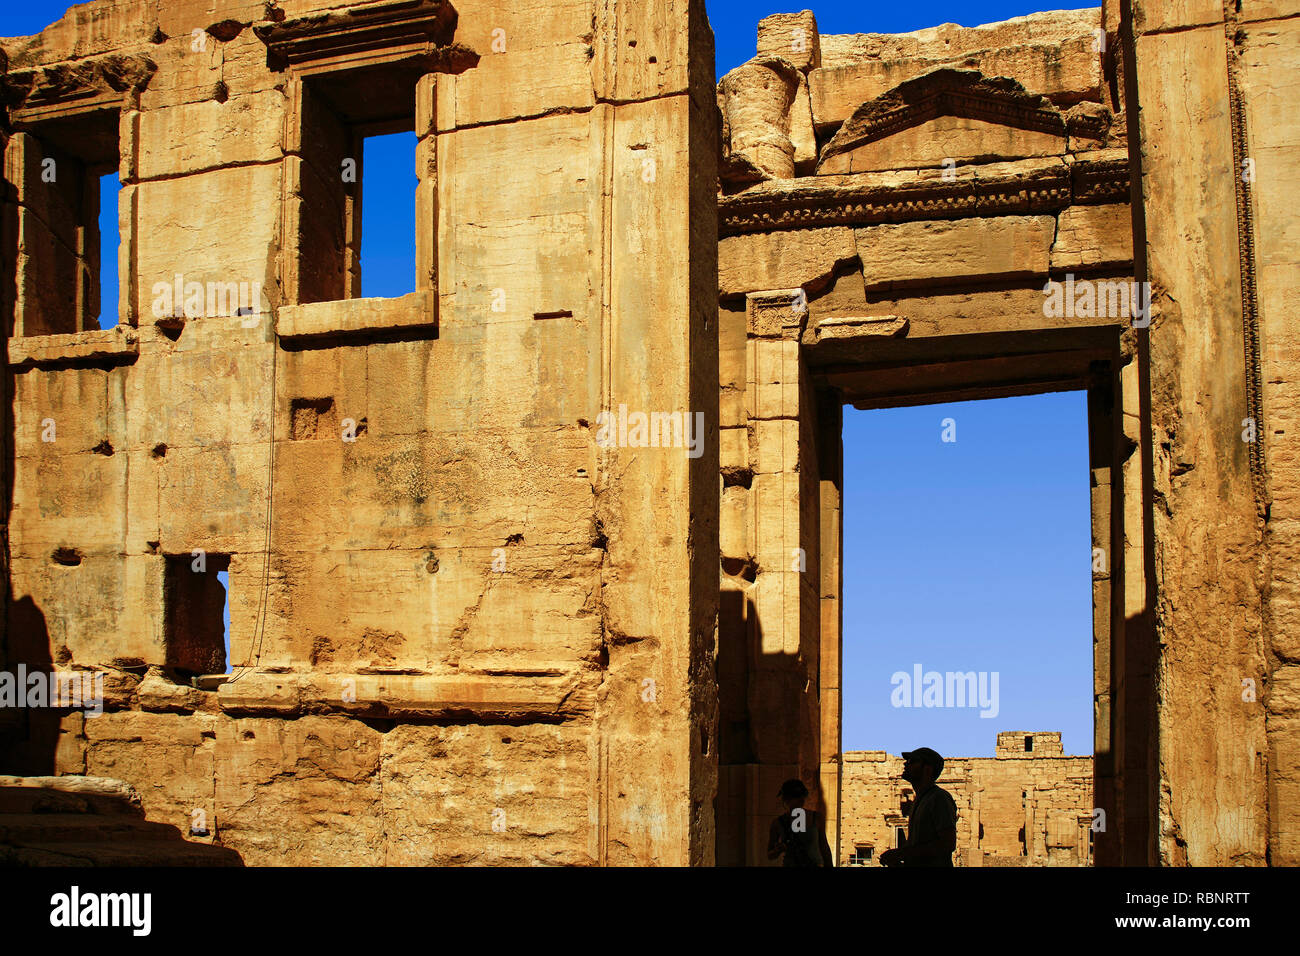 Temple de bal. Ruines de l'ancienne ville gréco-romaine de Palmyre. La Syrie, au Moyen-Orient Banque D'Images